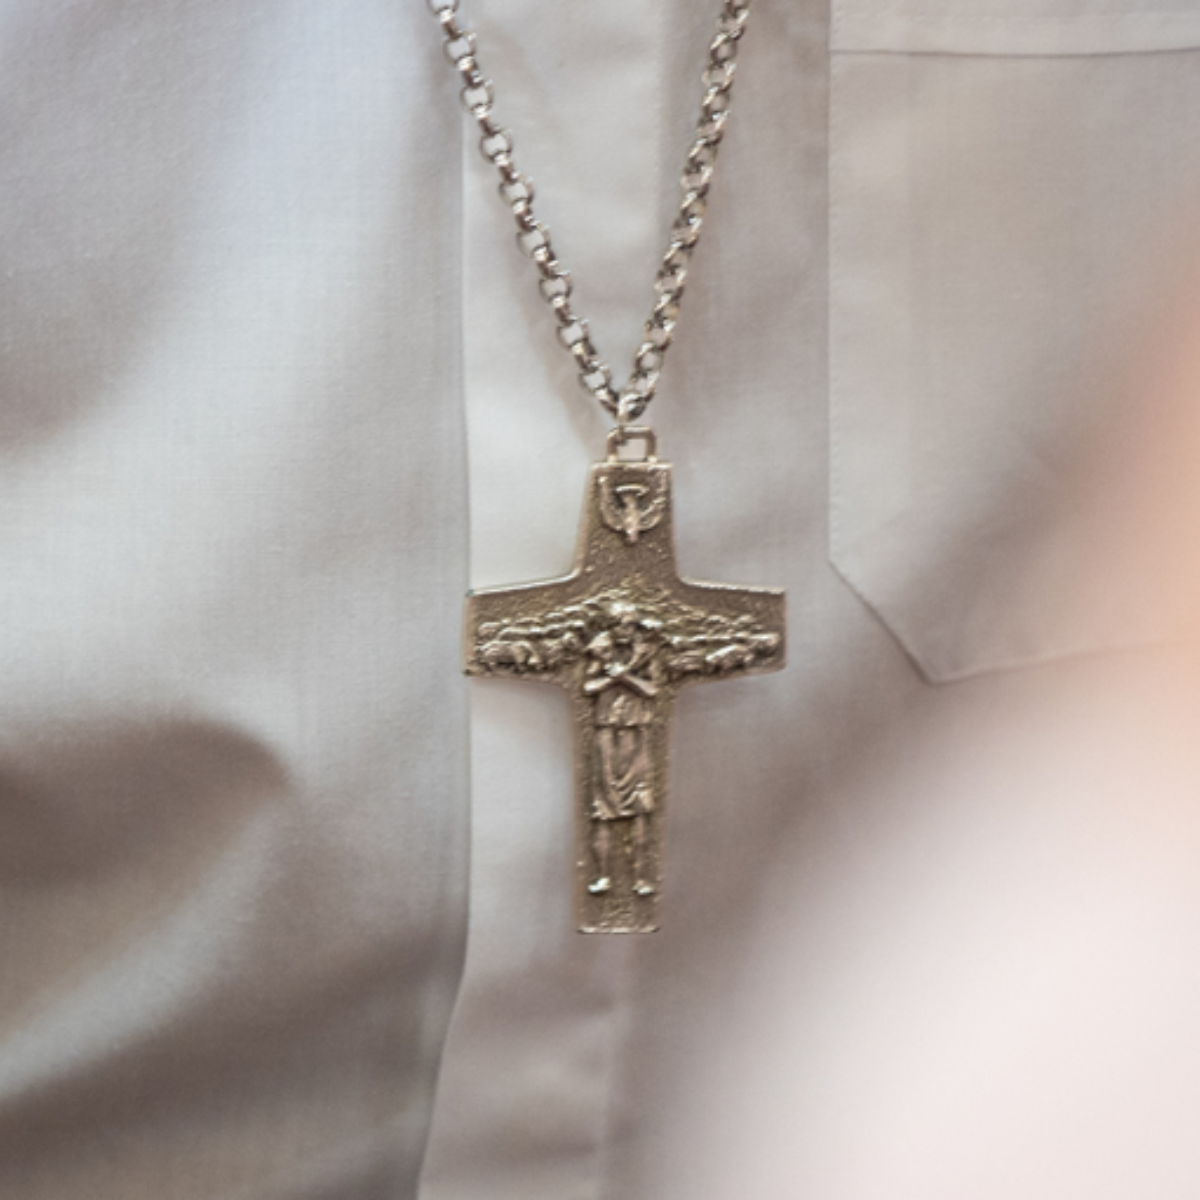  Direitos Humanos se posiciona contra multa por uso indevido de símbolos cristãos 